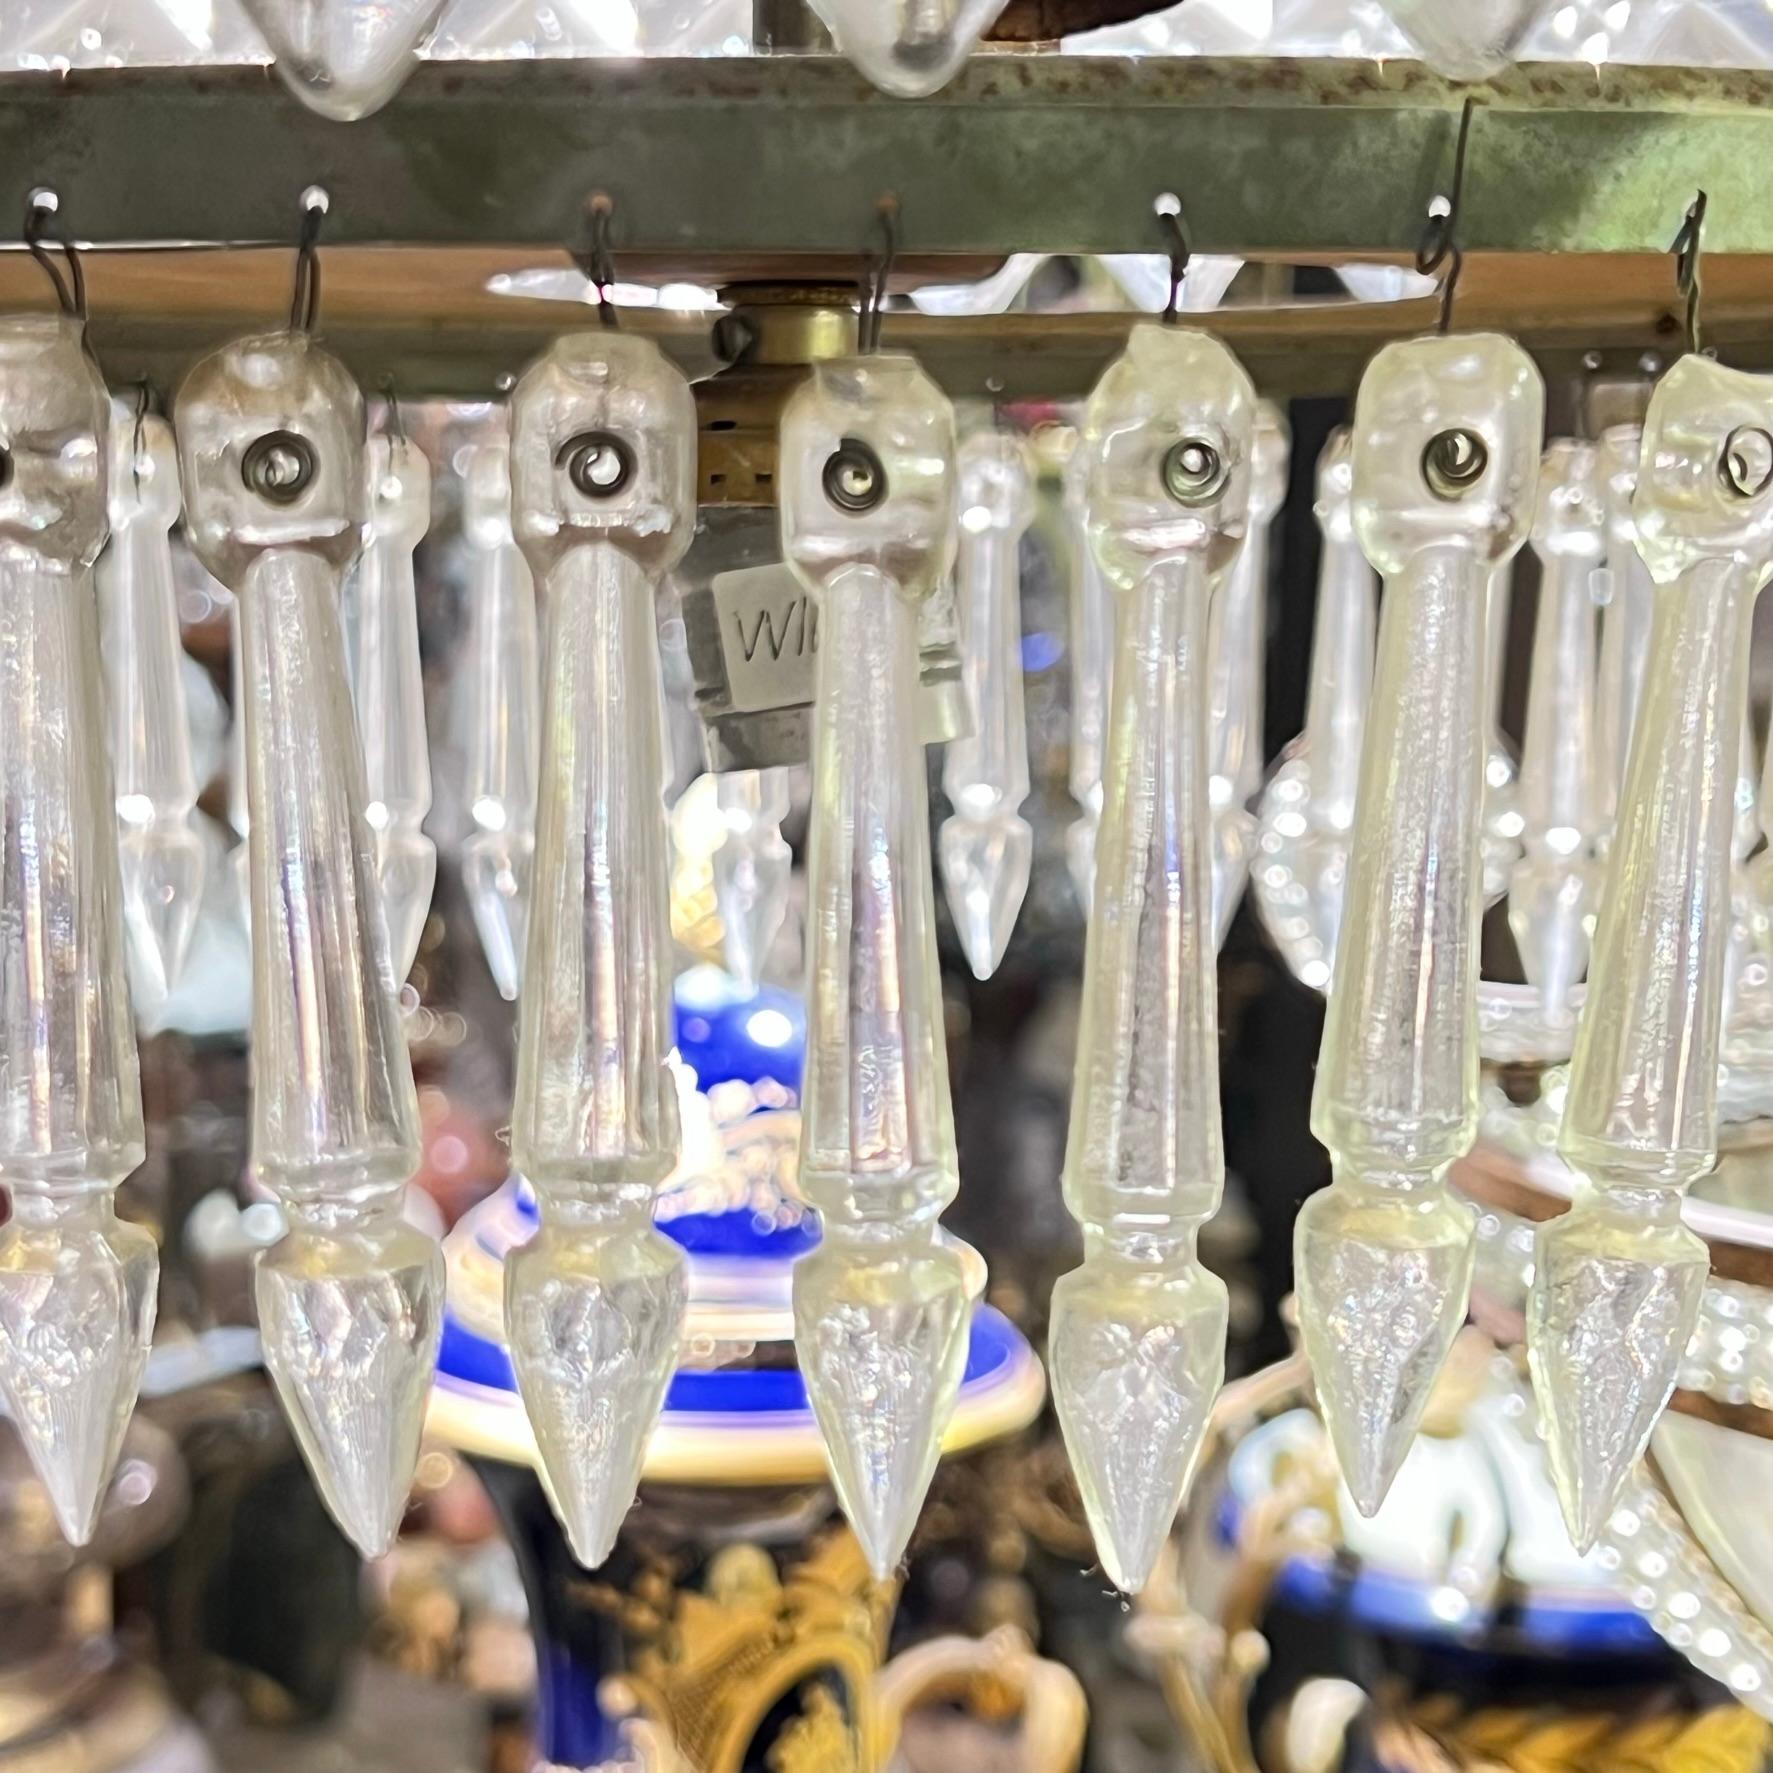 Einzigartiger Vintage-Kronleuchter im Stil von Baccarat mit Schirm aus geformtem Glas und hängendem Stiel mit drei Steckdosen in Standardgröße, deren Umfang mit geformten Glasanhängern verziert ist.